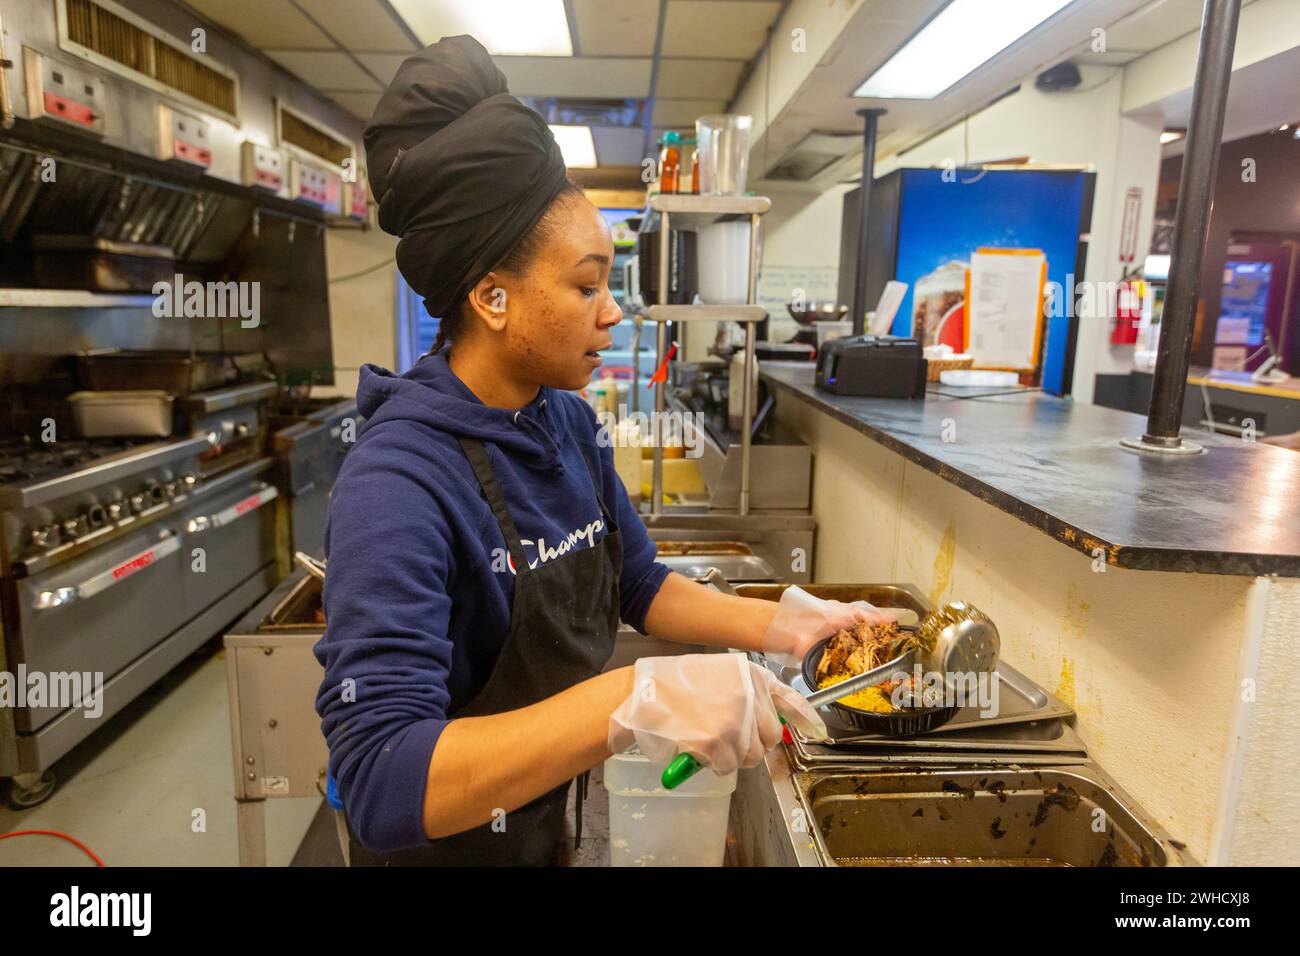 Detroit, Michigan - Natasha Coleman prépare des plats au restaurant Yum Village, qui sert des plats afro-caribéens. Banque D'Images